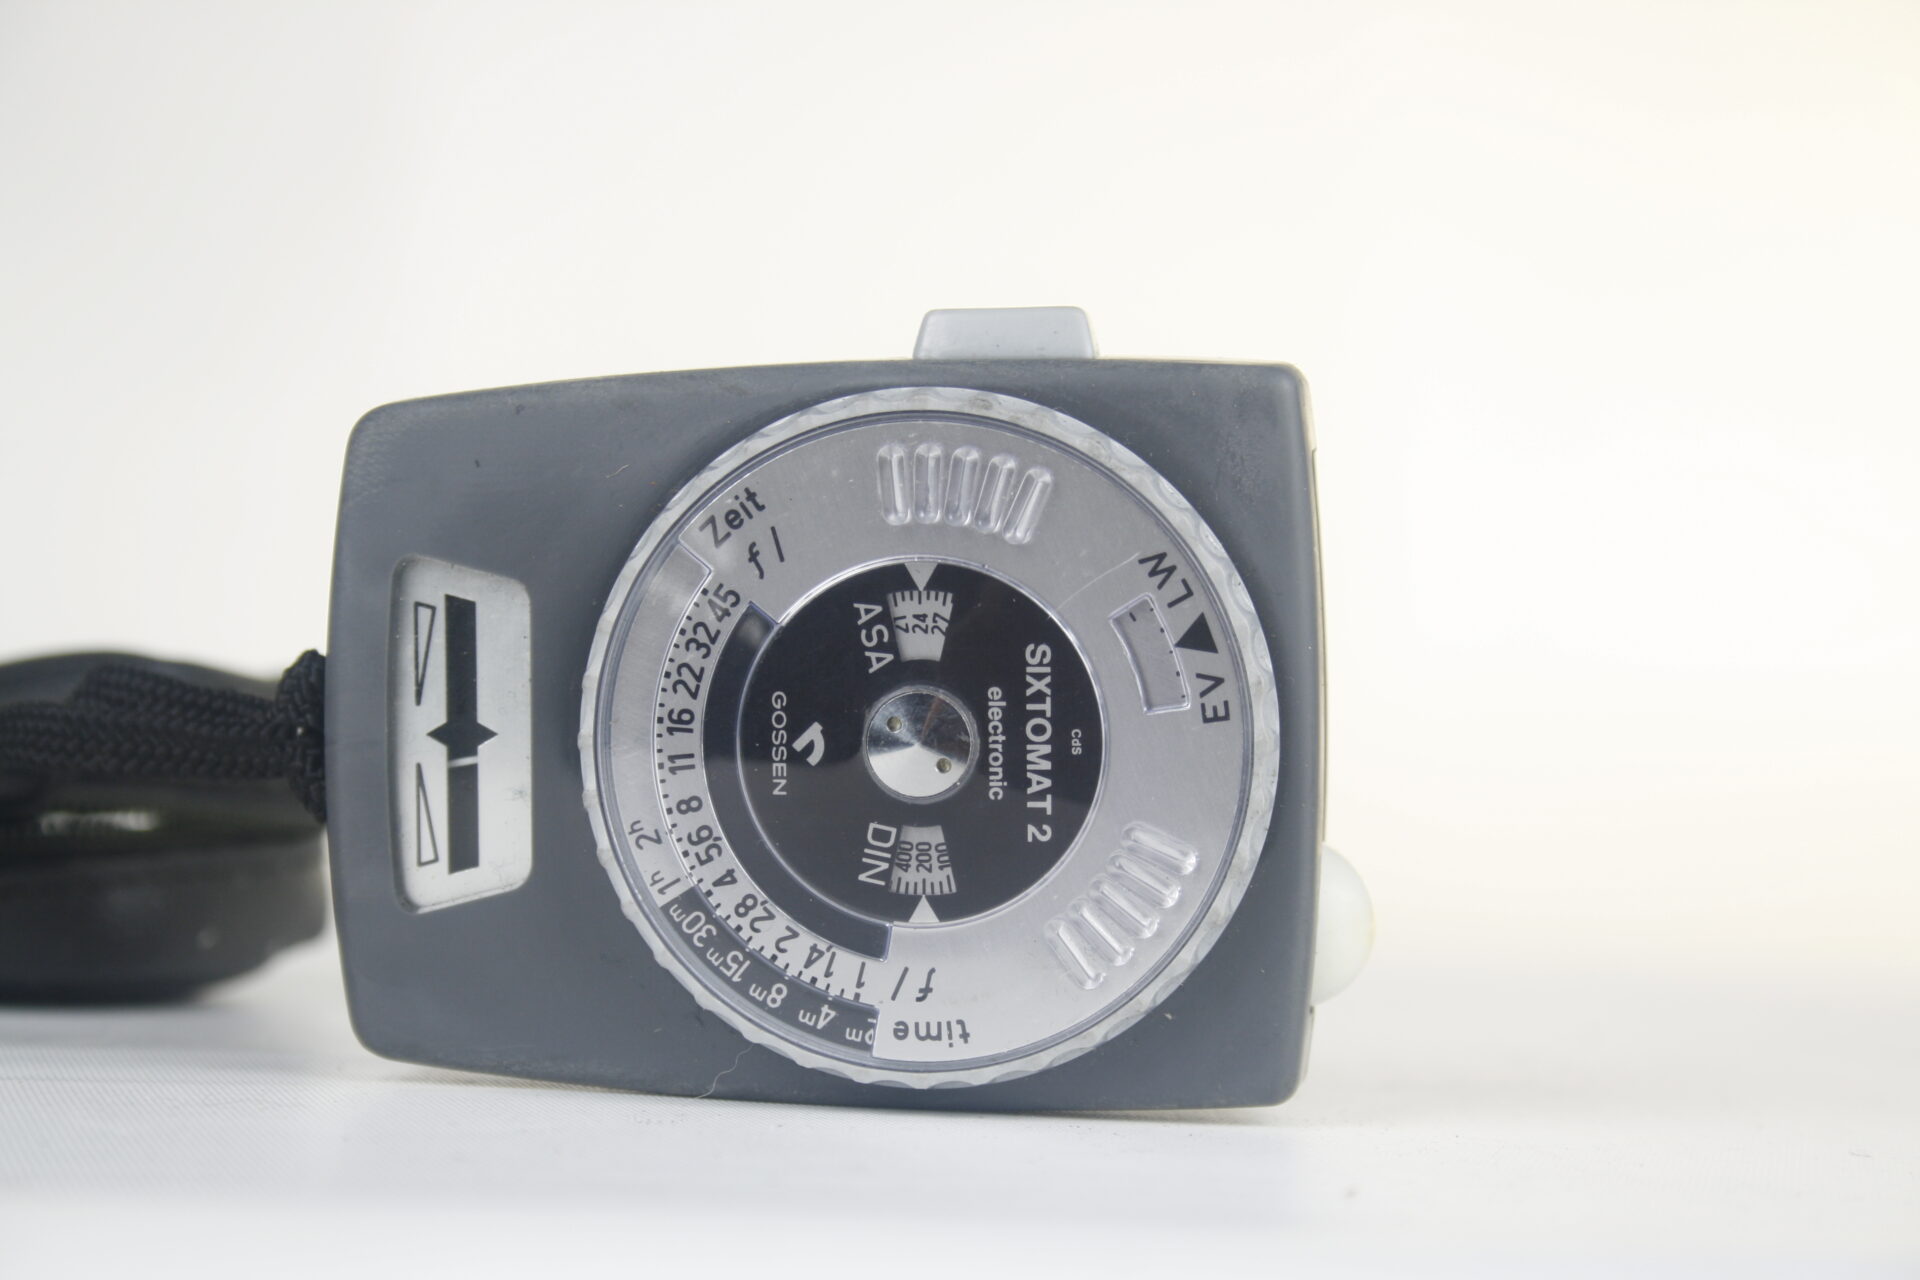 Gossen Sixtomat 2. f1-45. 30min.-1 2000 sec. Lens en lichtmeter. Ca. 1968. Grijs. Duitsland